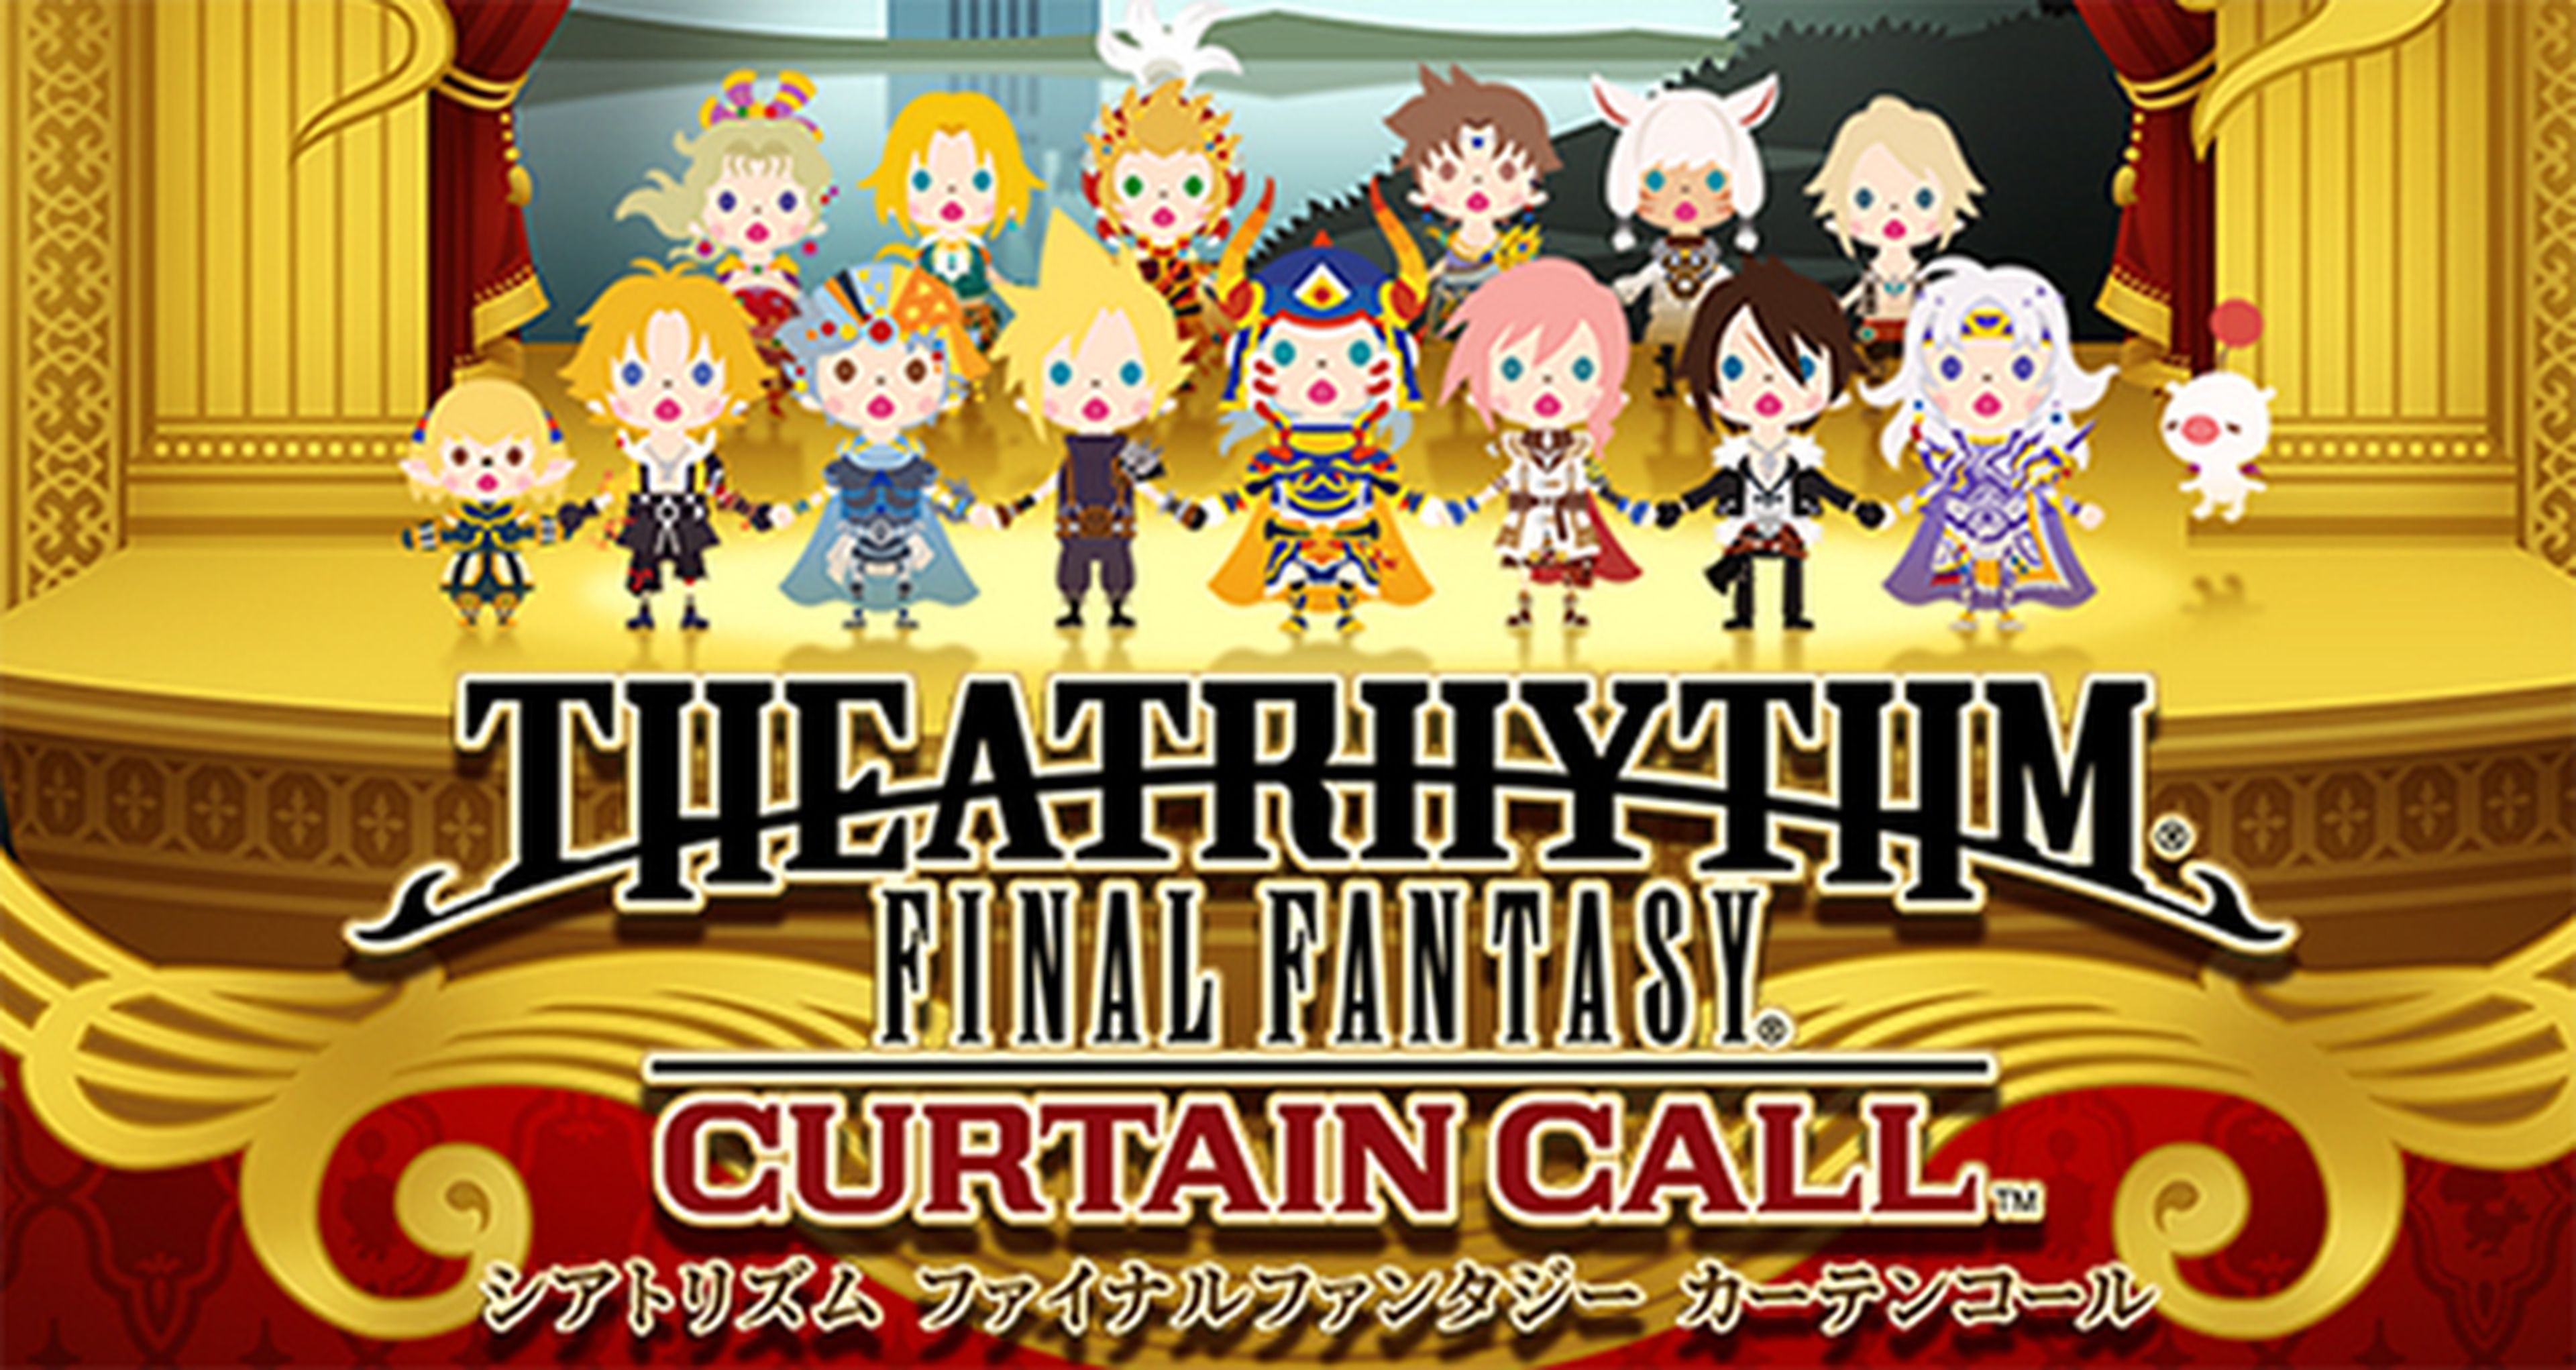 Análisis de Theatrhythm Final Fantasy: Curtain Call